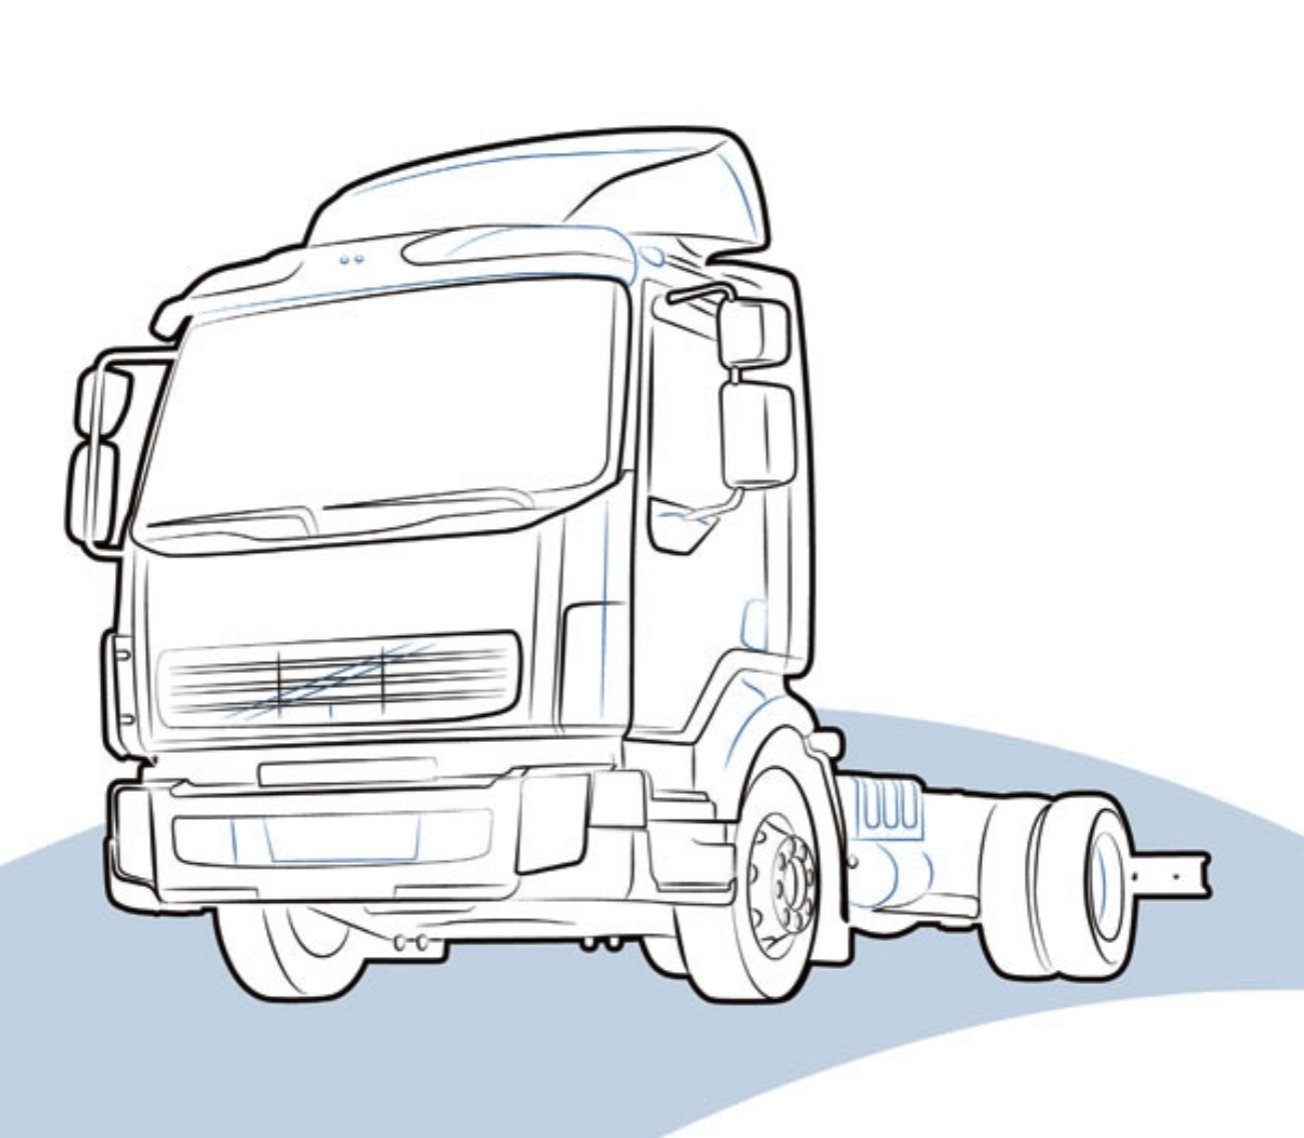 PANNELLO INFERIORE DAF LF - 1405013 - Carrozzeria Truck